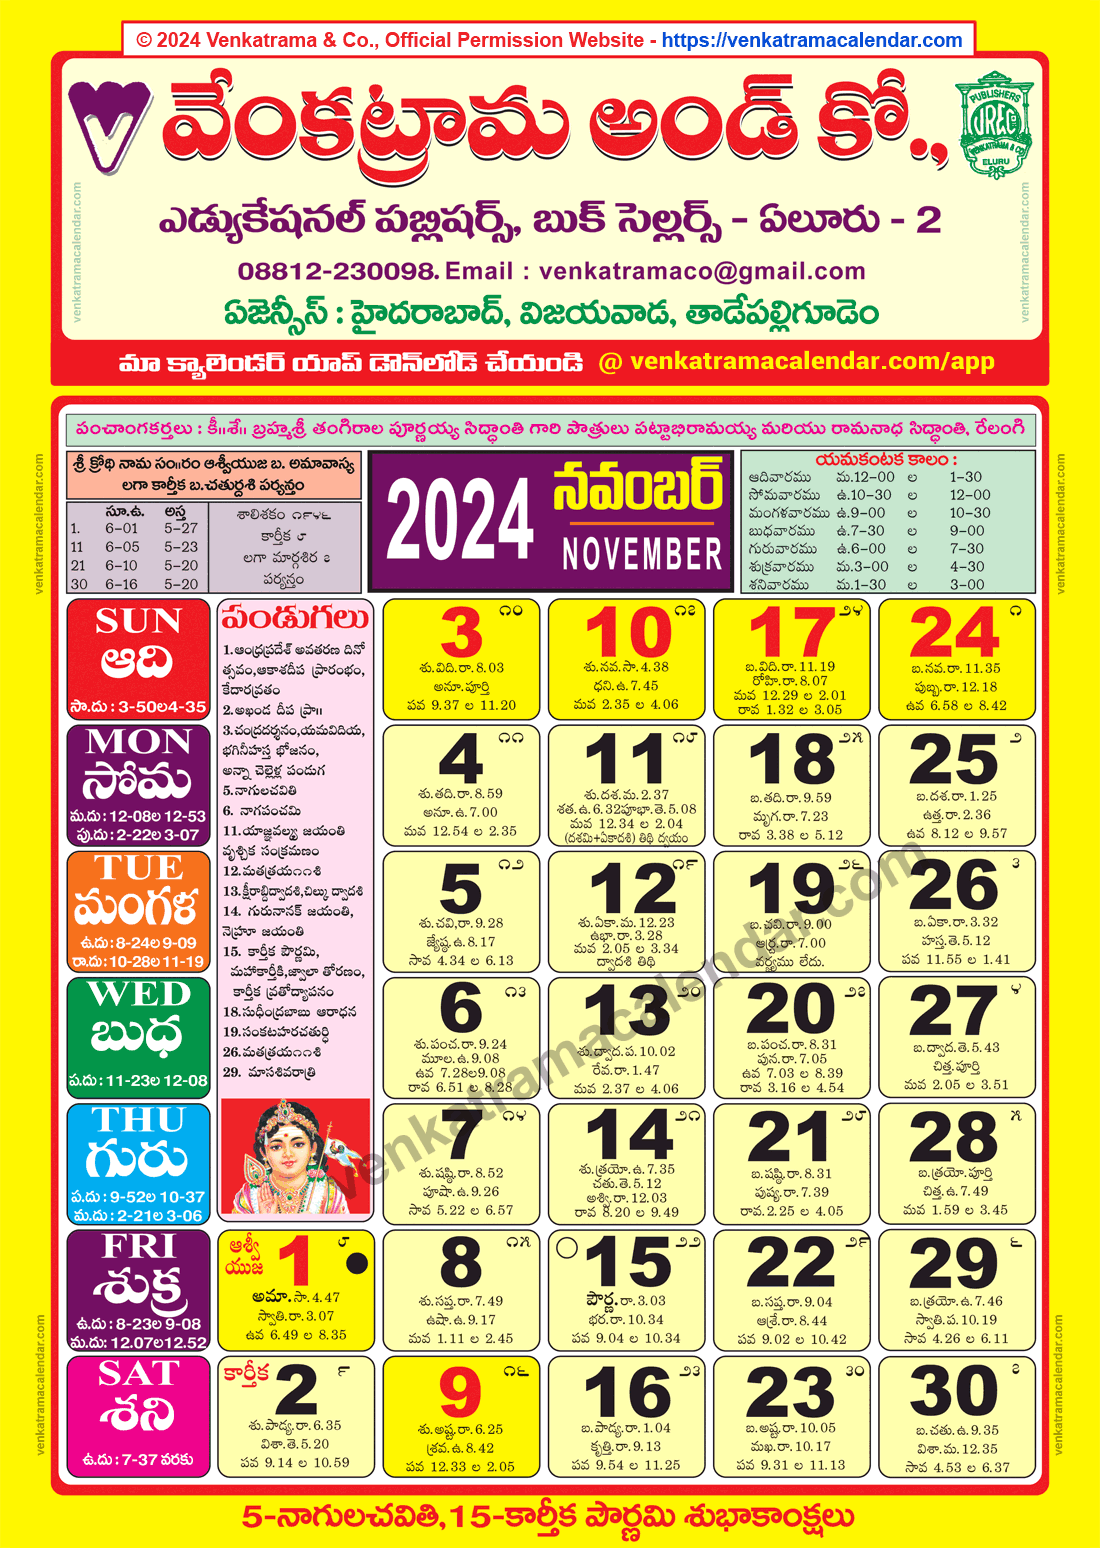 Venkatrama Calendar 2024 November